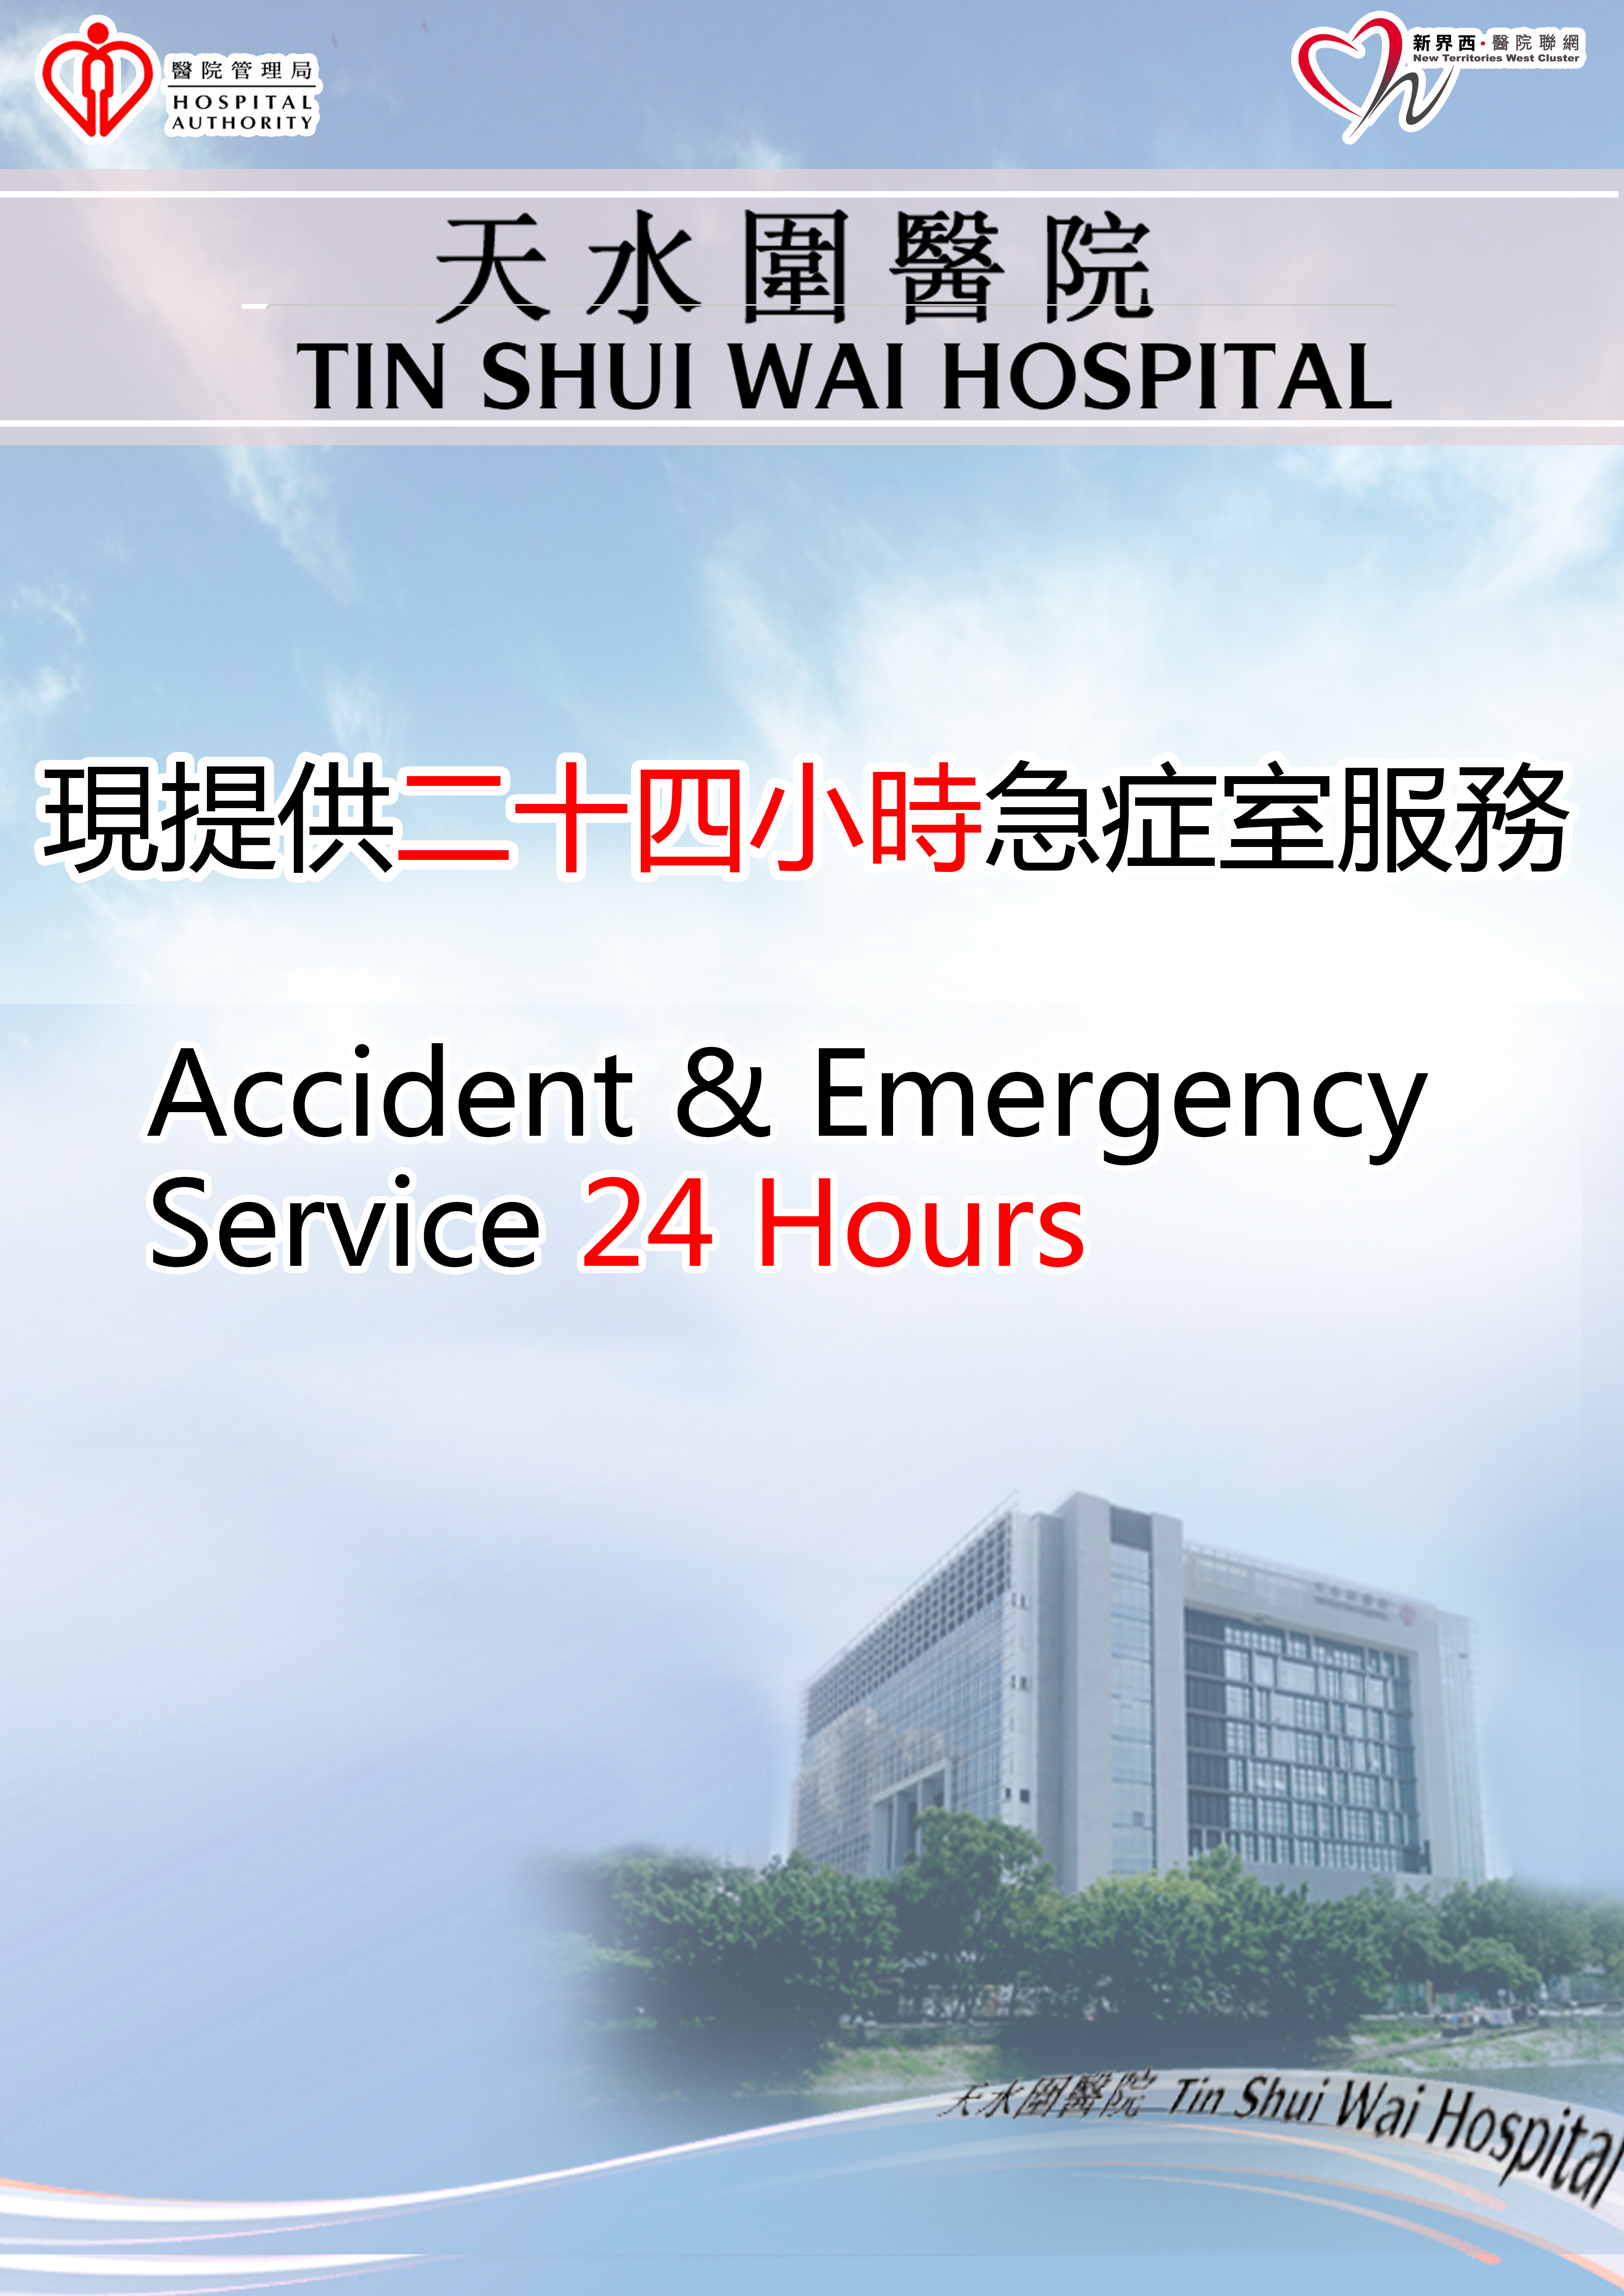 天水圍醫院現提供二十四小時急症室服務